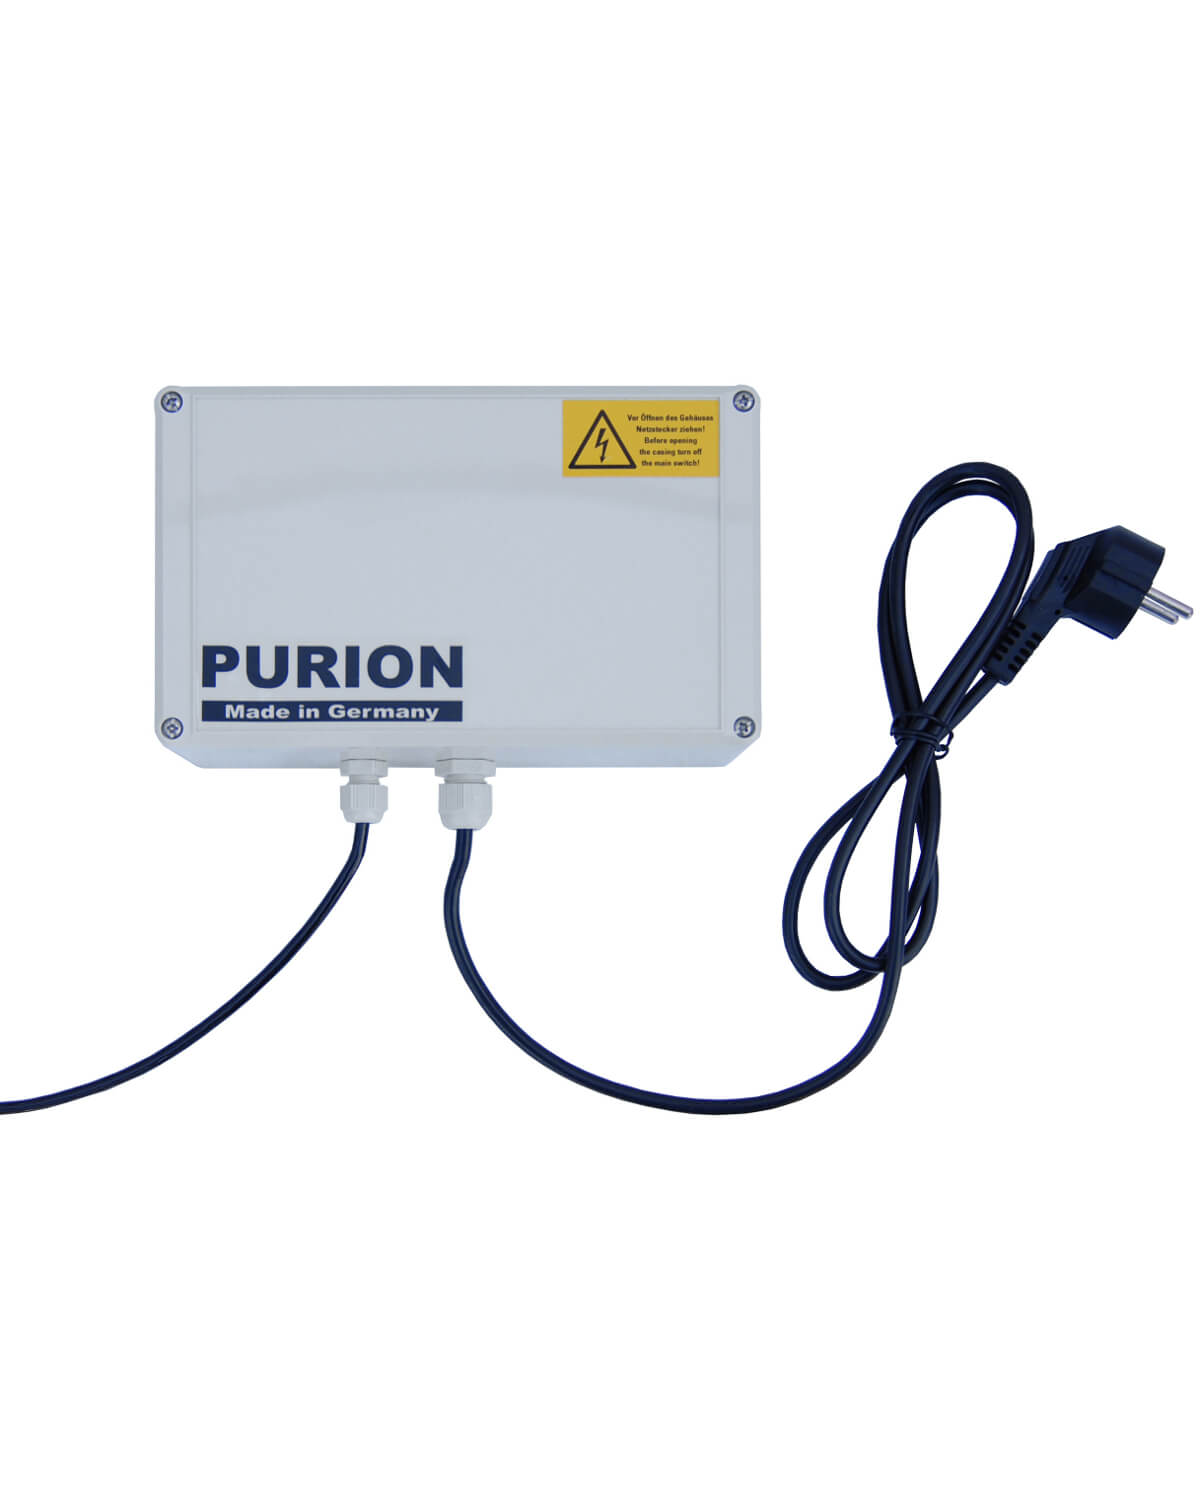 Die PURION GmbH ist auf die Wasserdesinfektion mit der PURION 1000 110 - 240 V AC Basic UV-C-Licht-Technologie spezialisiert, um die Reinheit und Sicherheit des Trinkwassers zu gewährleisten.